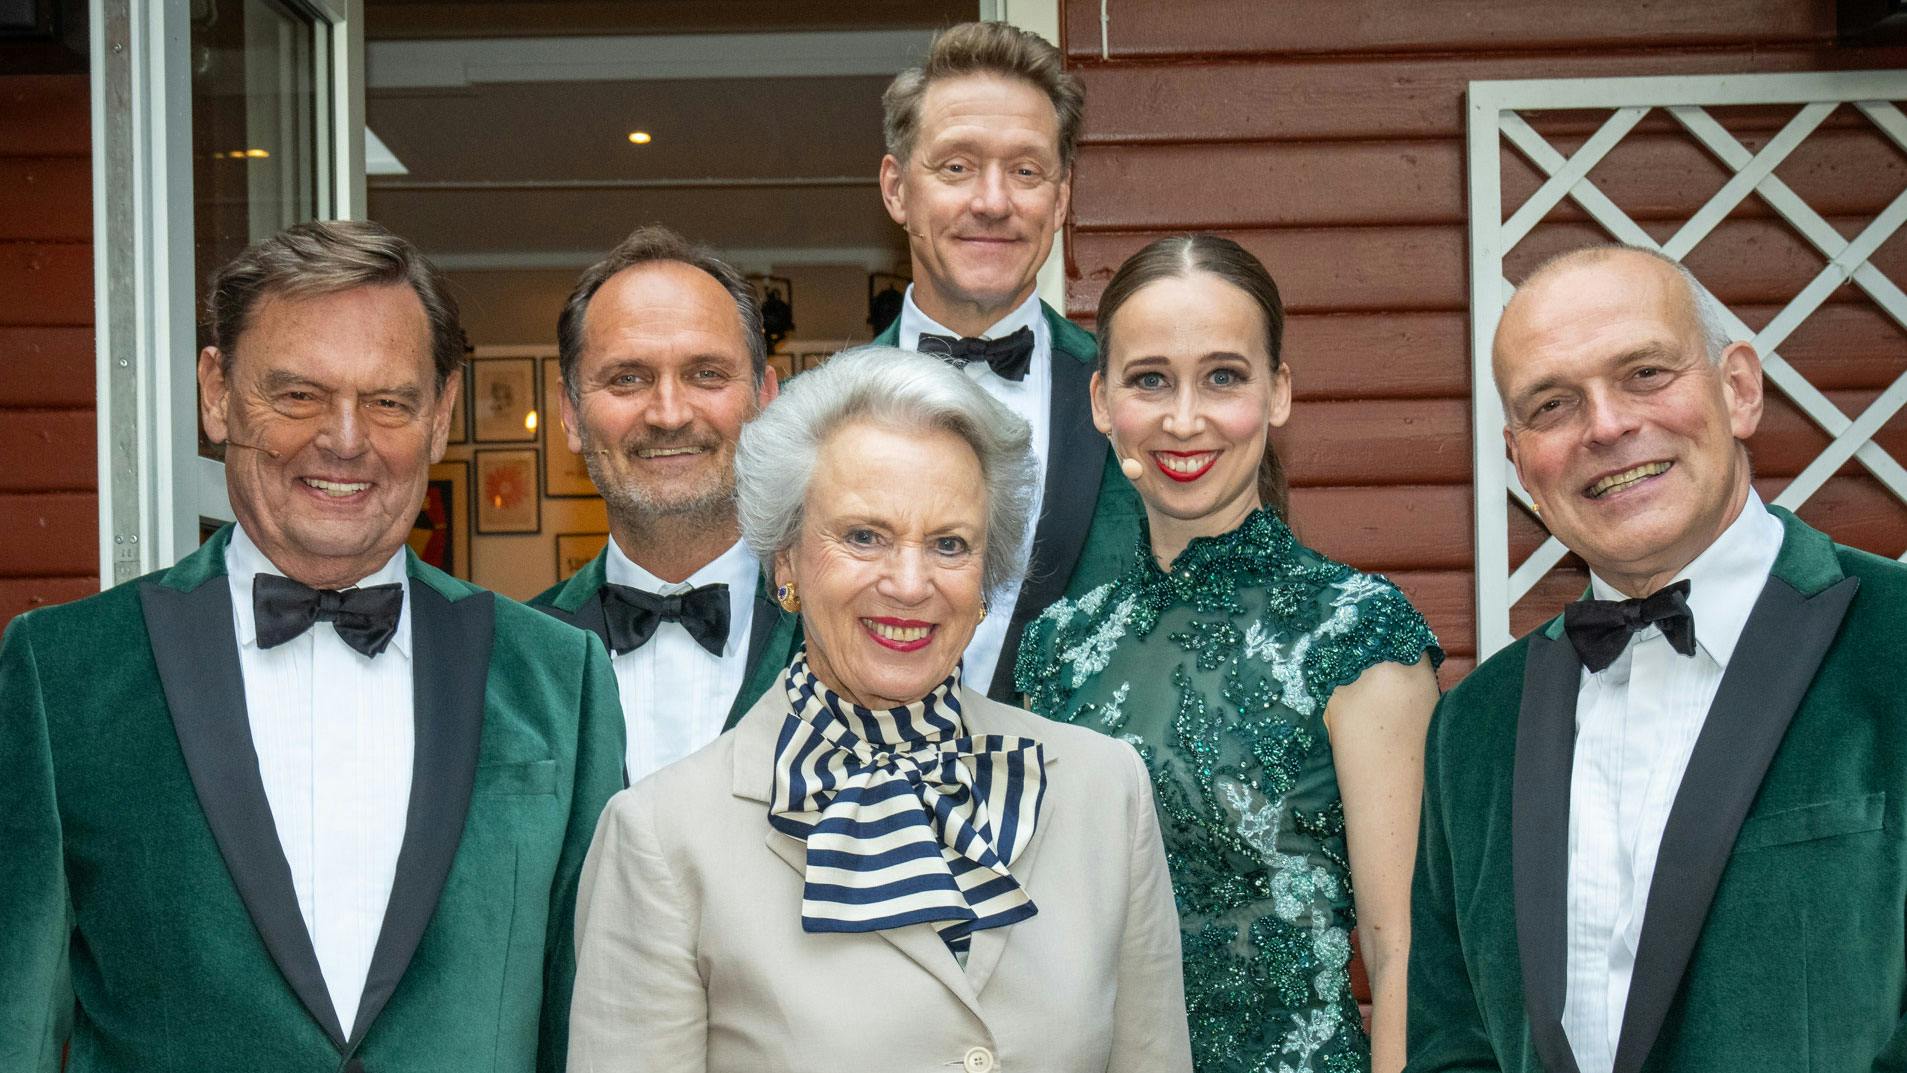 Prinsesse Benedikte med Ulf Pilgaard, Niels Ellegaard, Henrik Lykkegaard, Merete Mærkedahl og Niels Olsen.